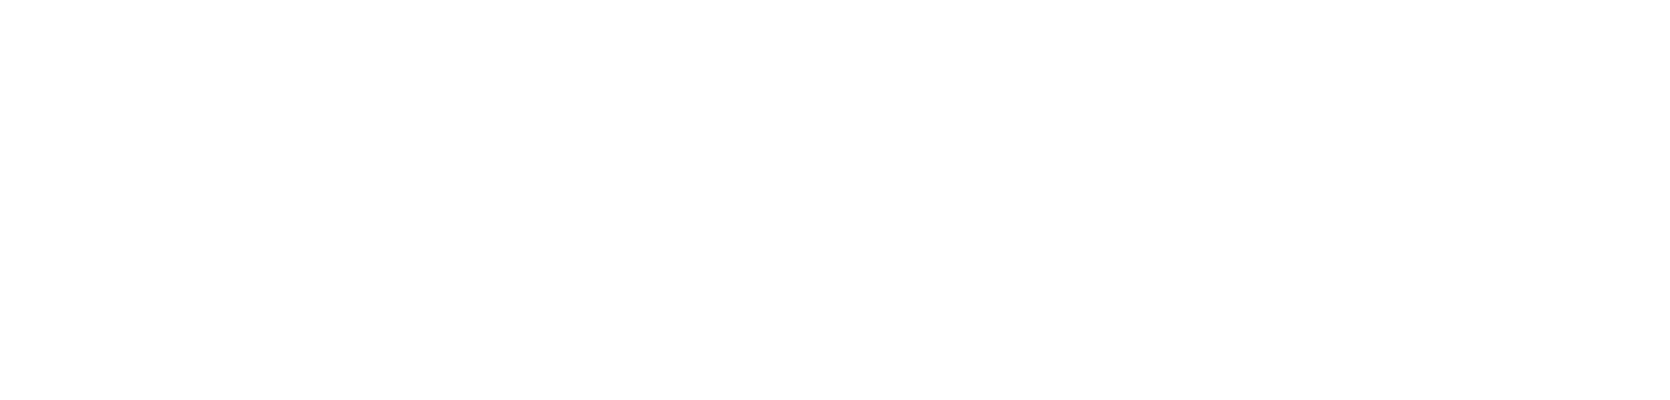 The logo of Itonomy